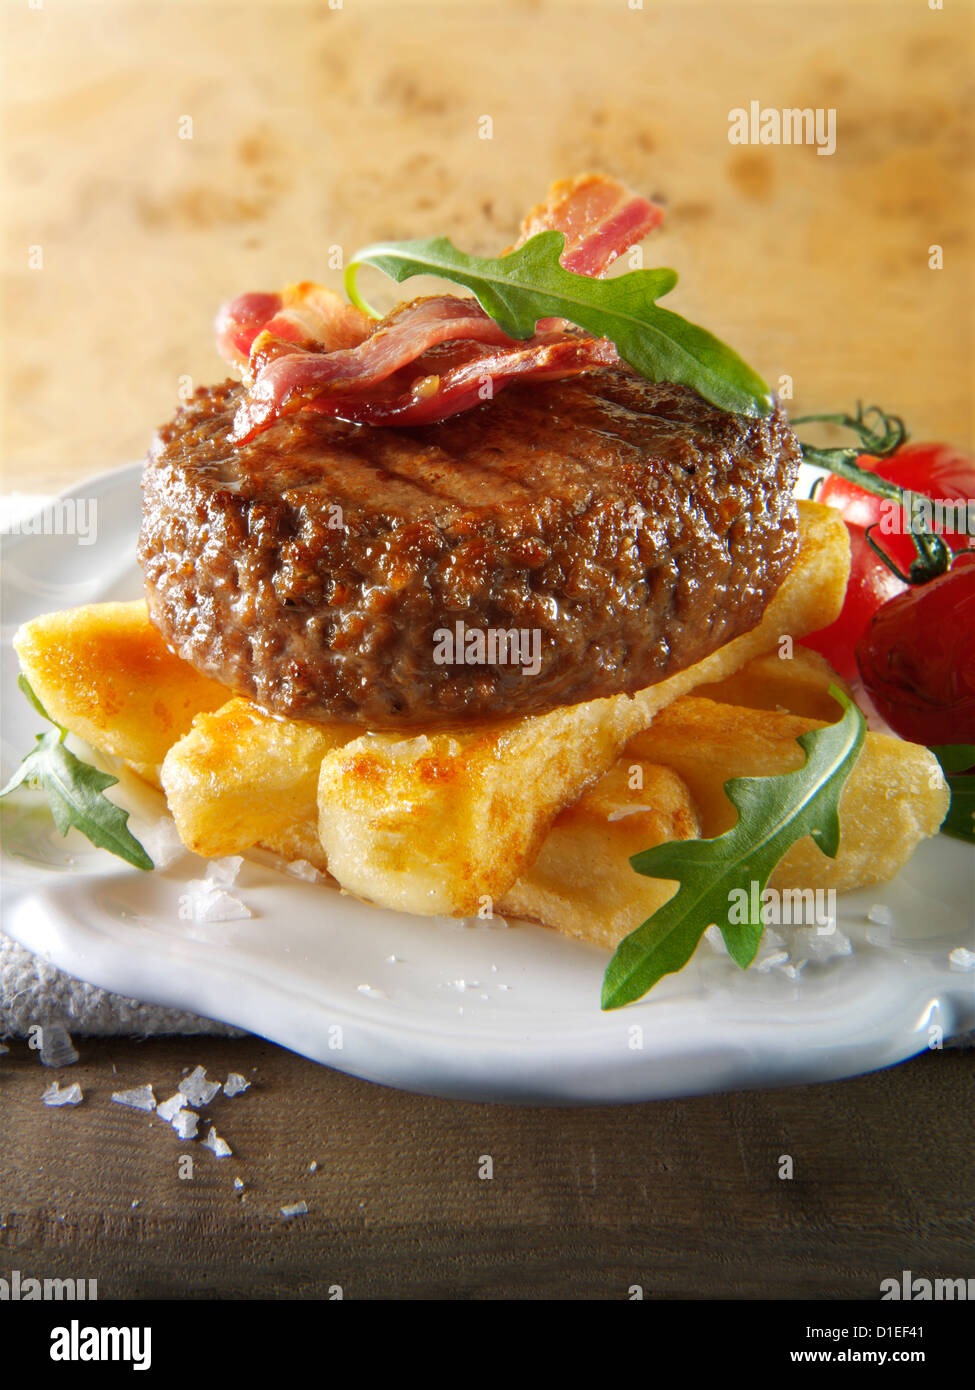 Gegrilltes Rindfleisch-Burger mit klobigen Pommes Frites und Salat Fotos Char. Stockfoto